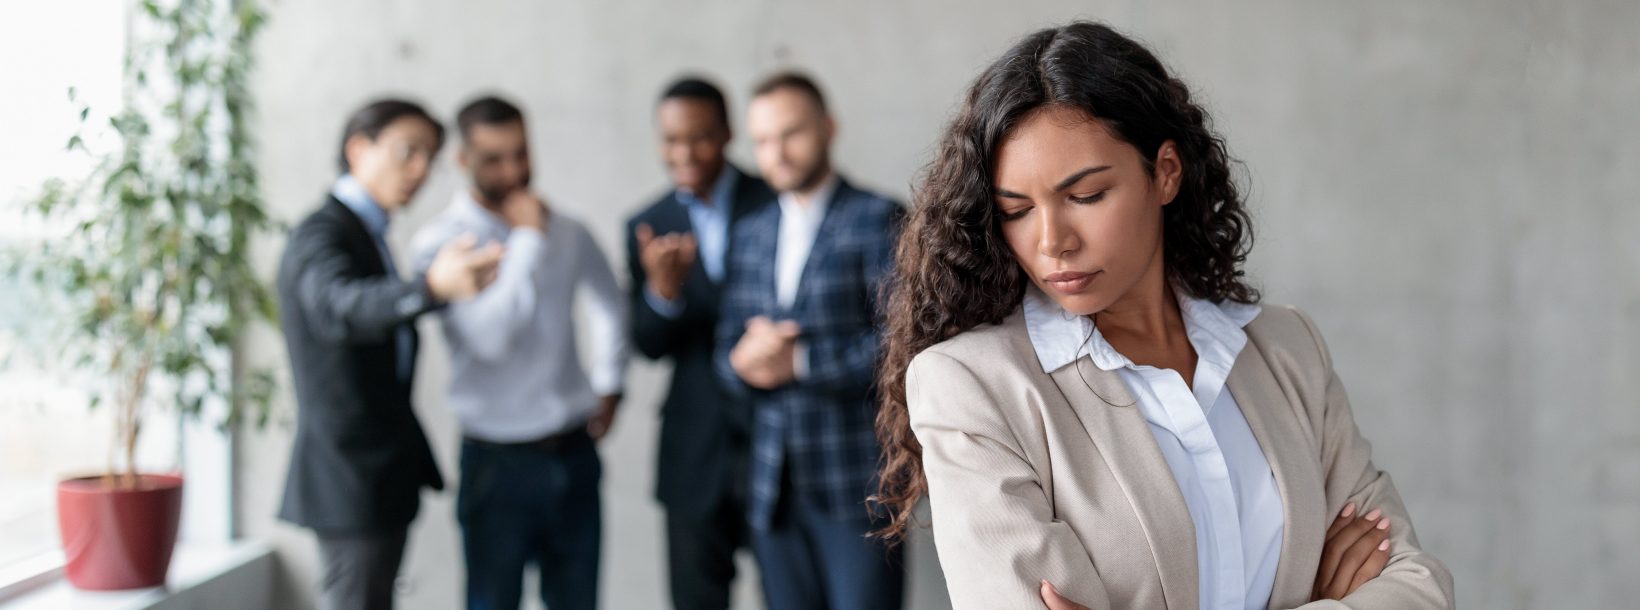 Sexuelle Belästigung am Arbeitsplatz – so können Sie sich wehren